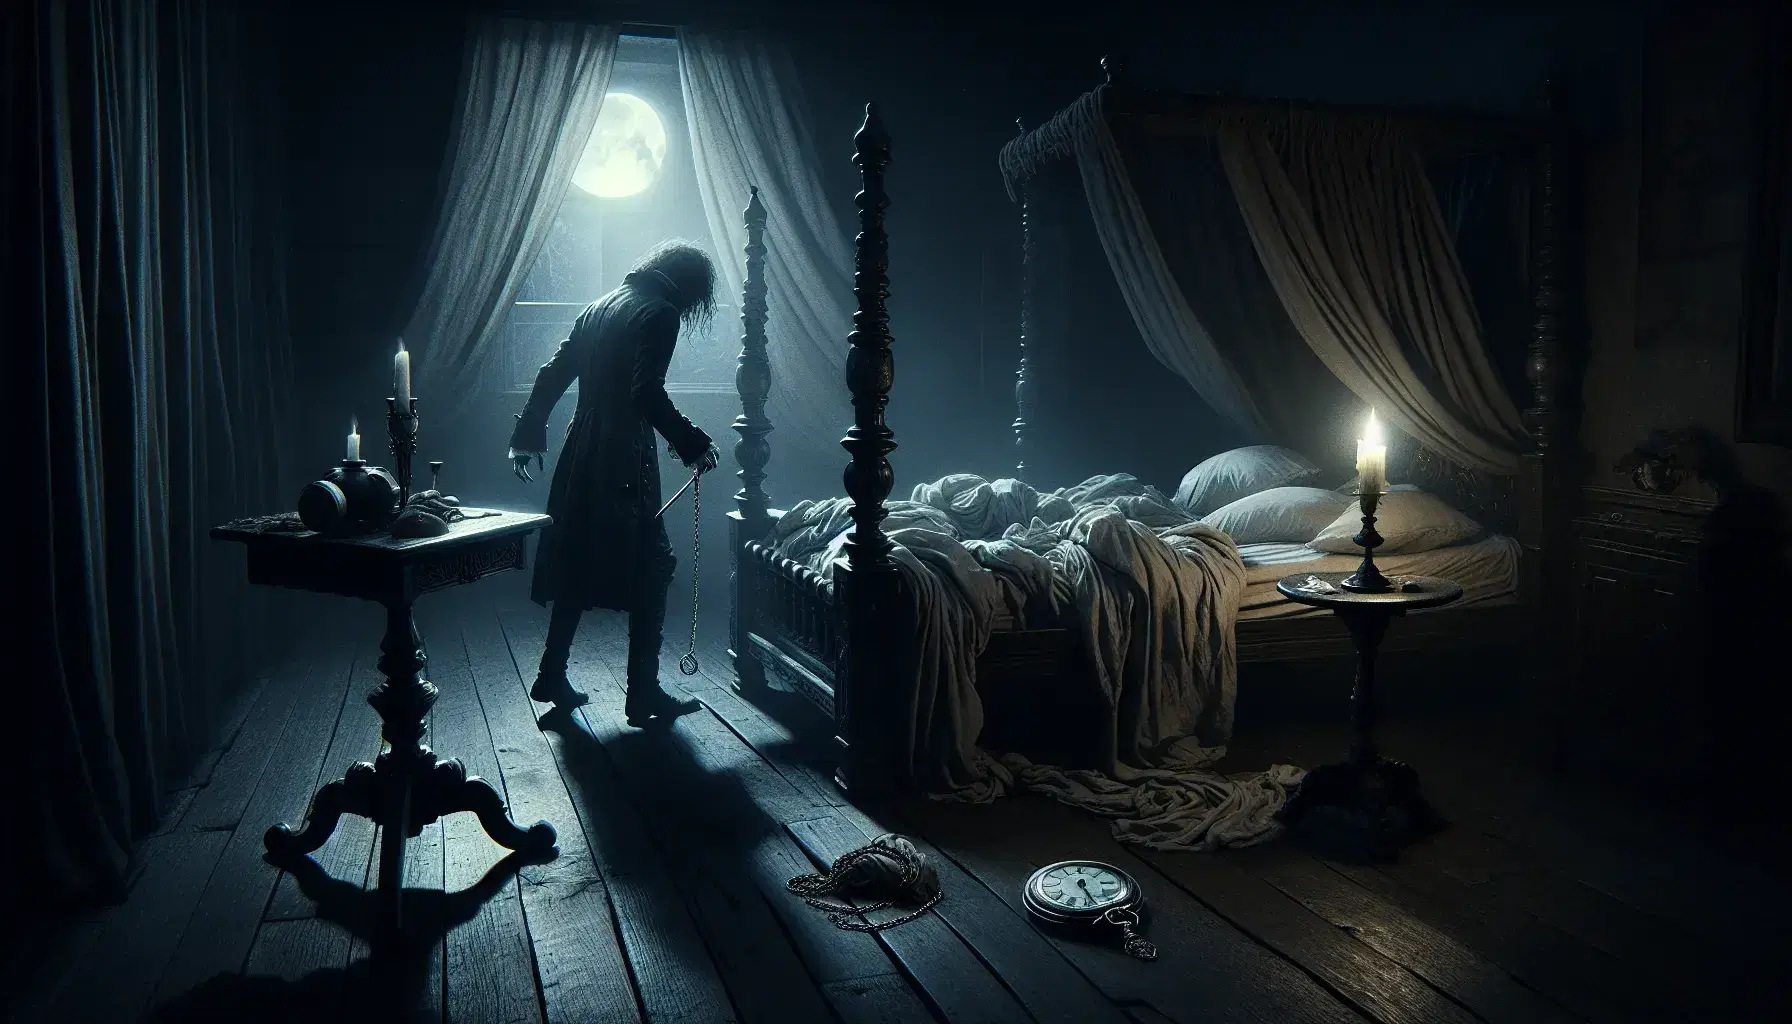 Escena nocturna en habitación antigua con cama de dosel, sábanas desordenadas, reloj de bolsillo y figura humana vestida de época junto a la cama.